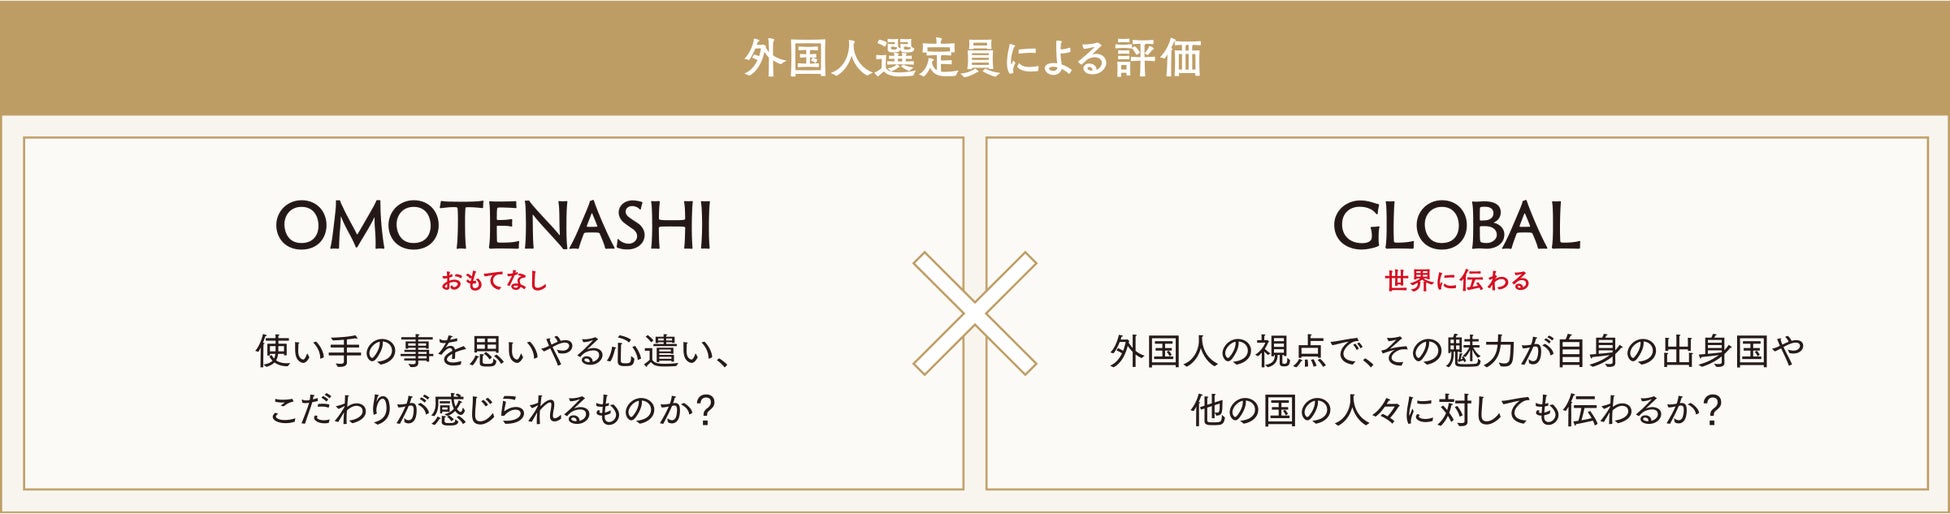 サウナ専用薬用乳液「saunality」が「OMOTENASHI Selection（おもてなしセレクション） 2023」を受賞！